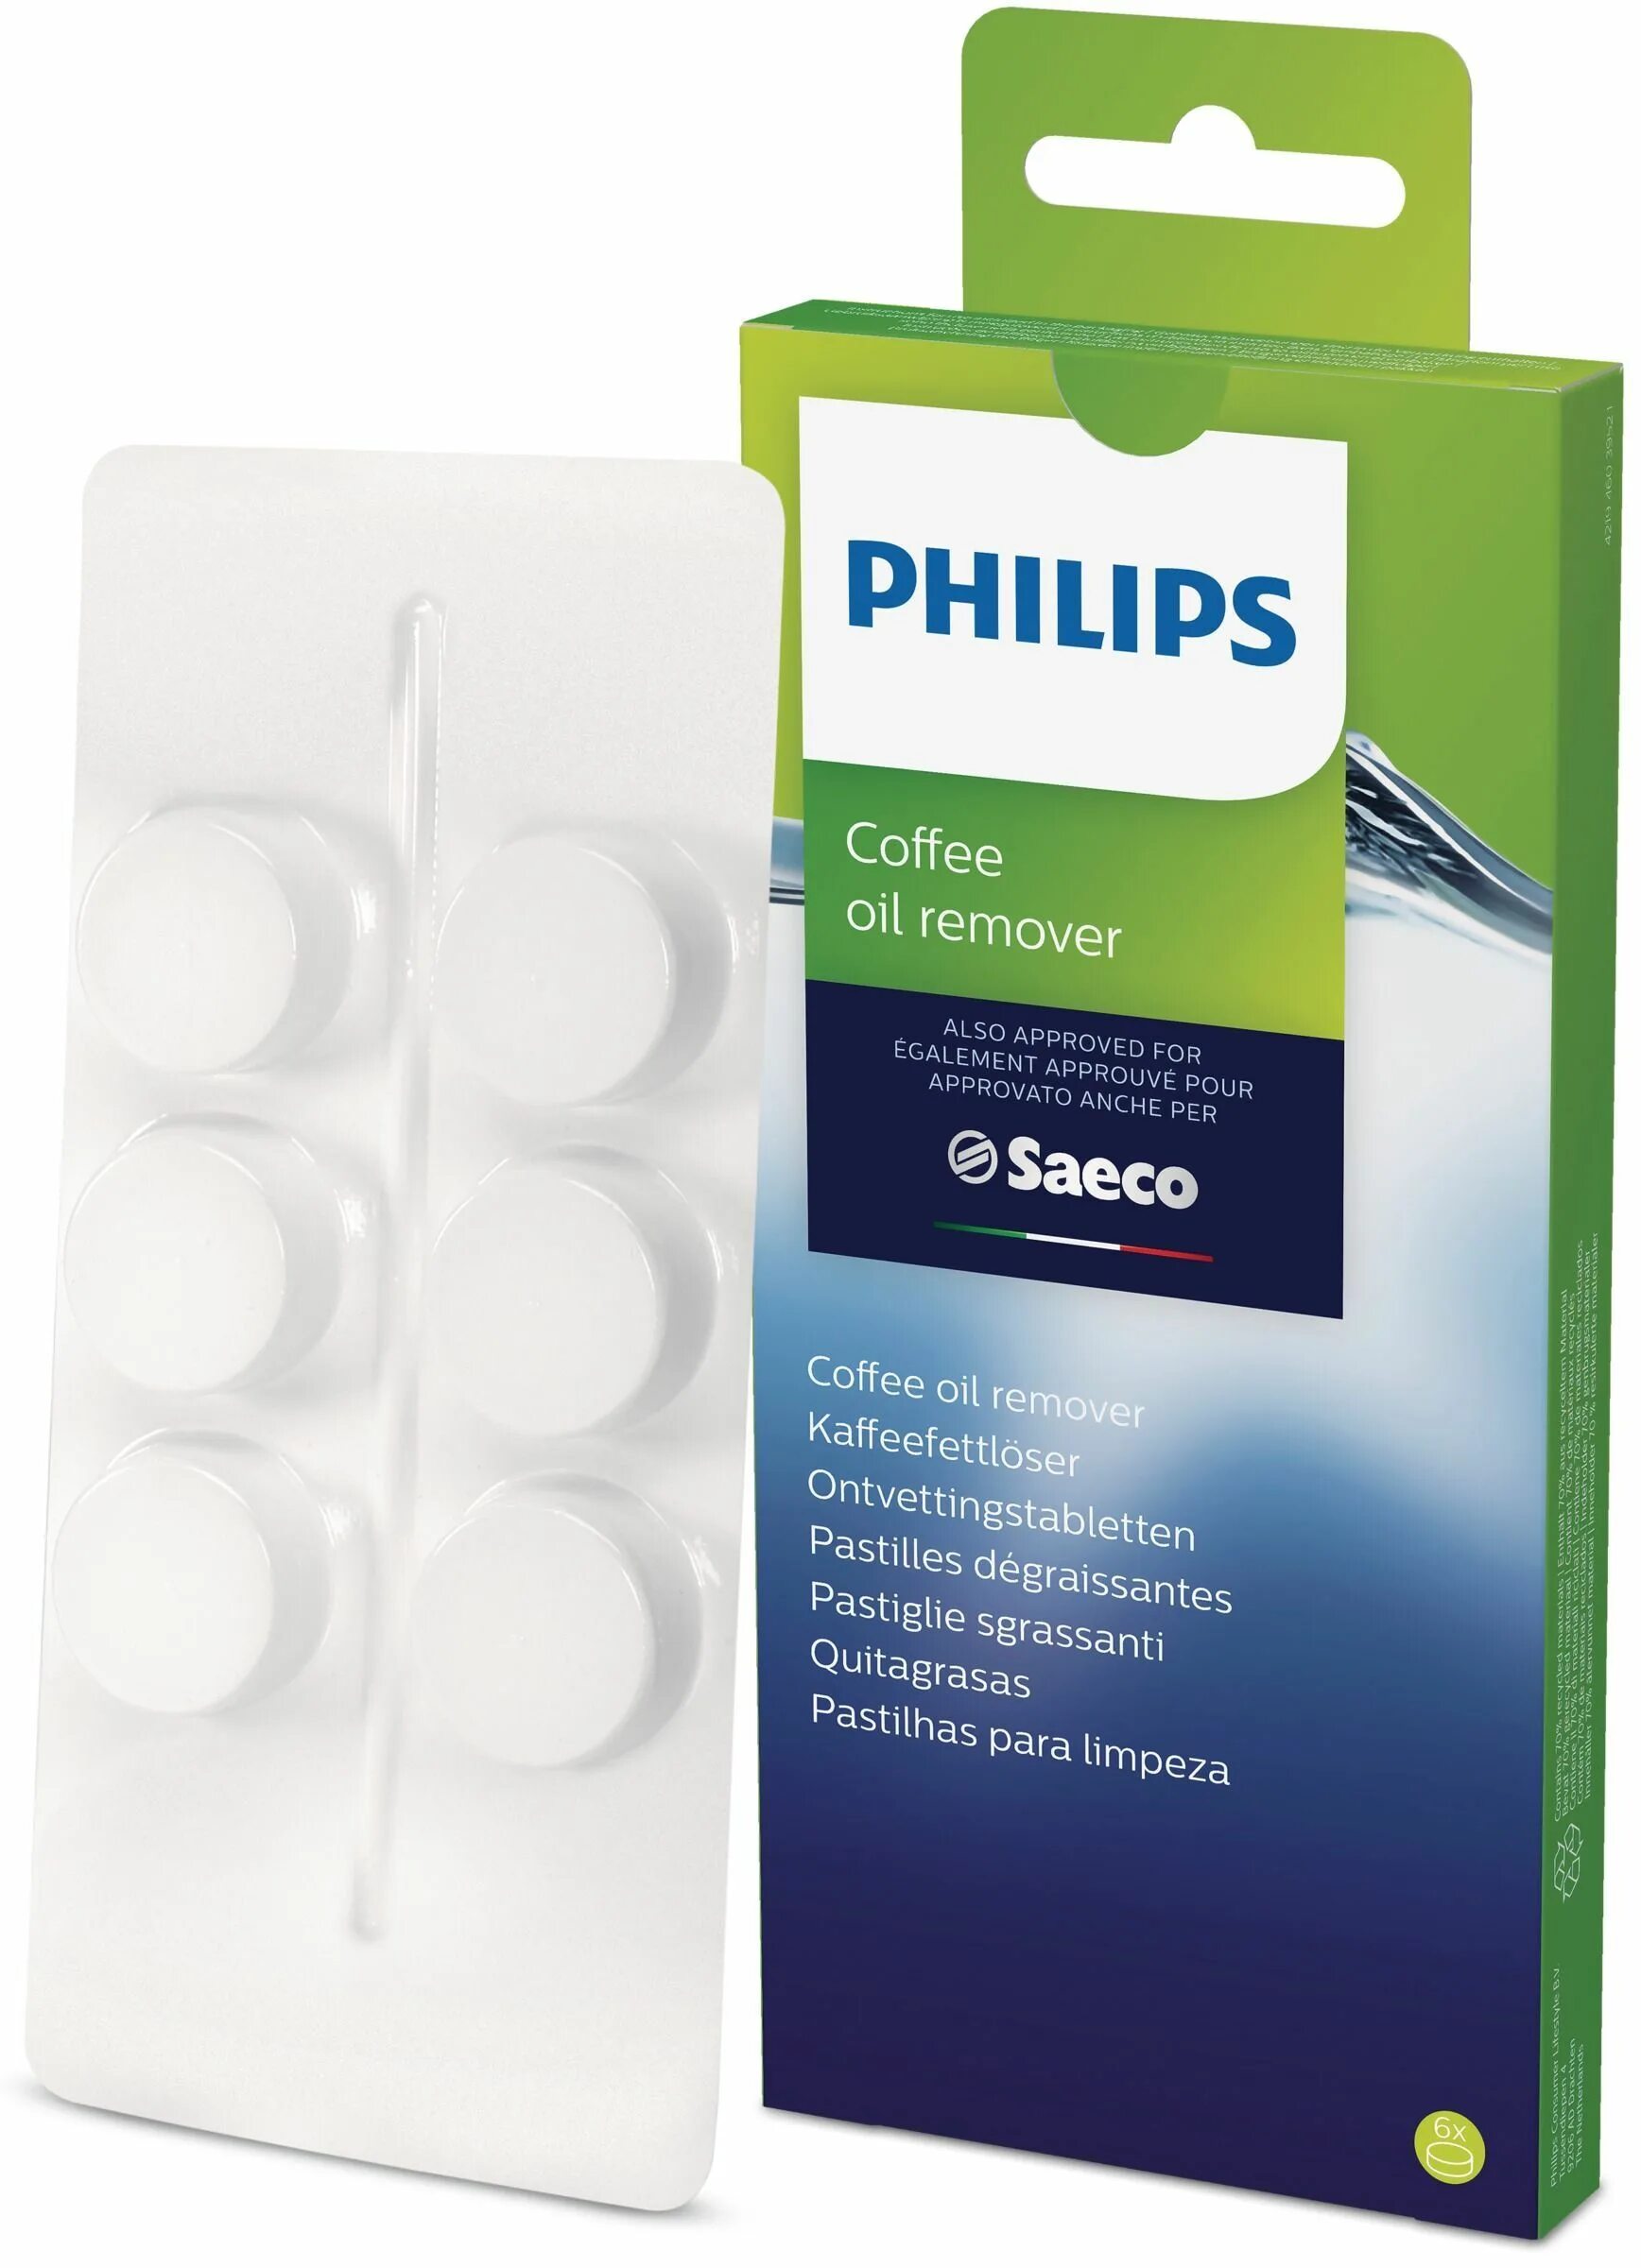 Средство Philips ca6704/10. Средство для очистки от кофейных масел для кофемашин Philips ca6704/10. Средство для очистки от кофейных масел для кофемашин Philips ca6704/10, 6 шт. Philips Saeco ca6704.